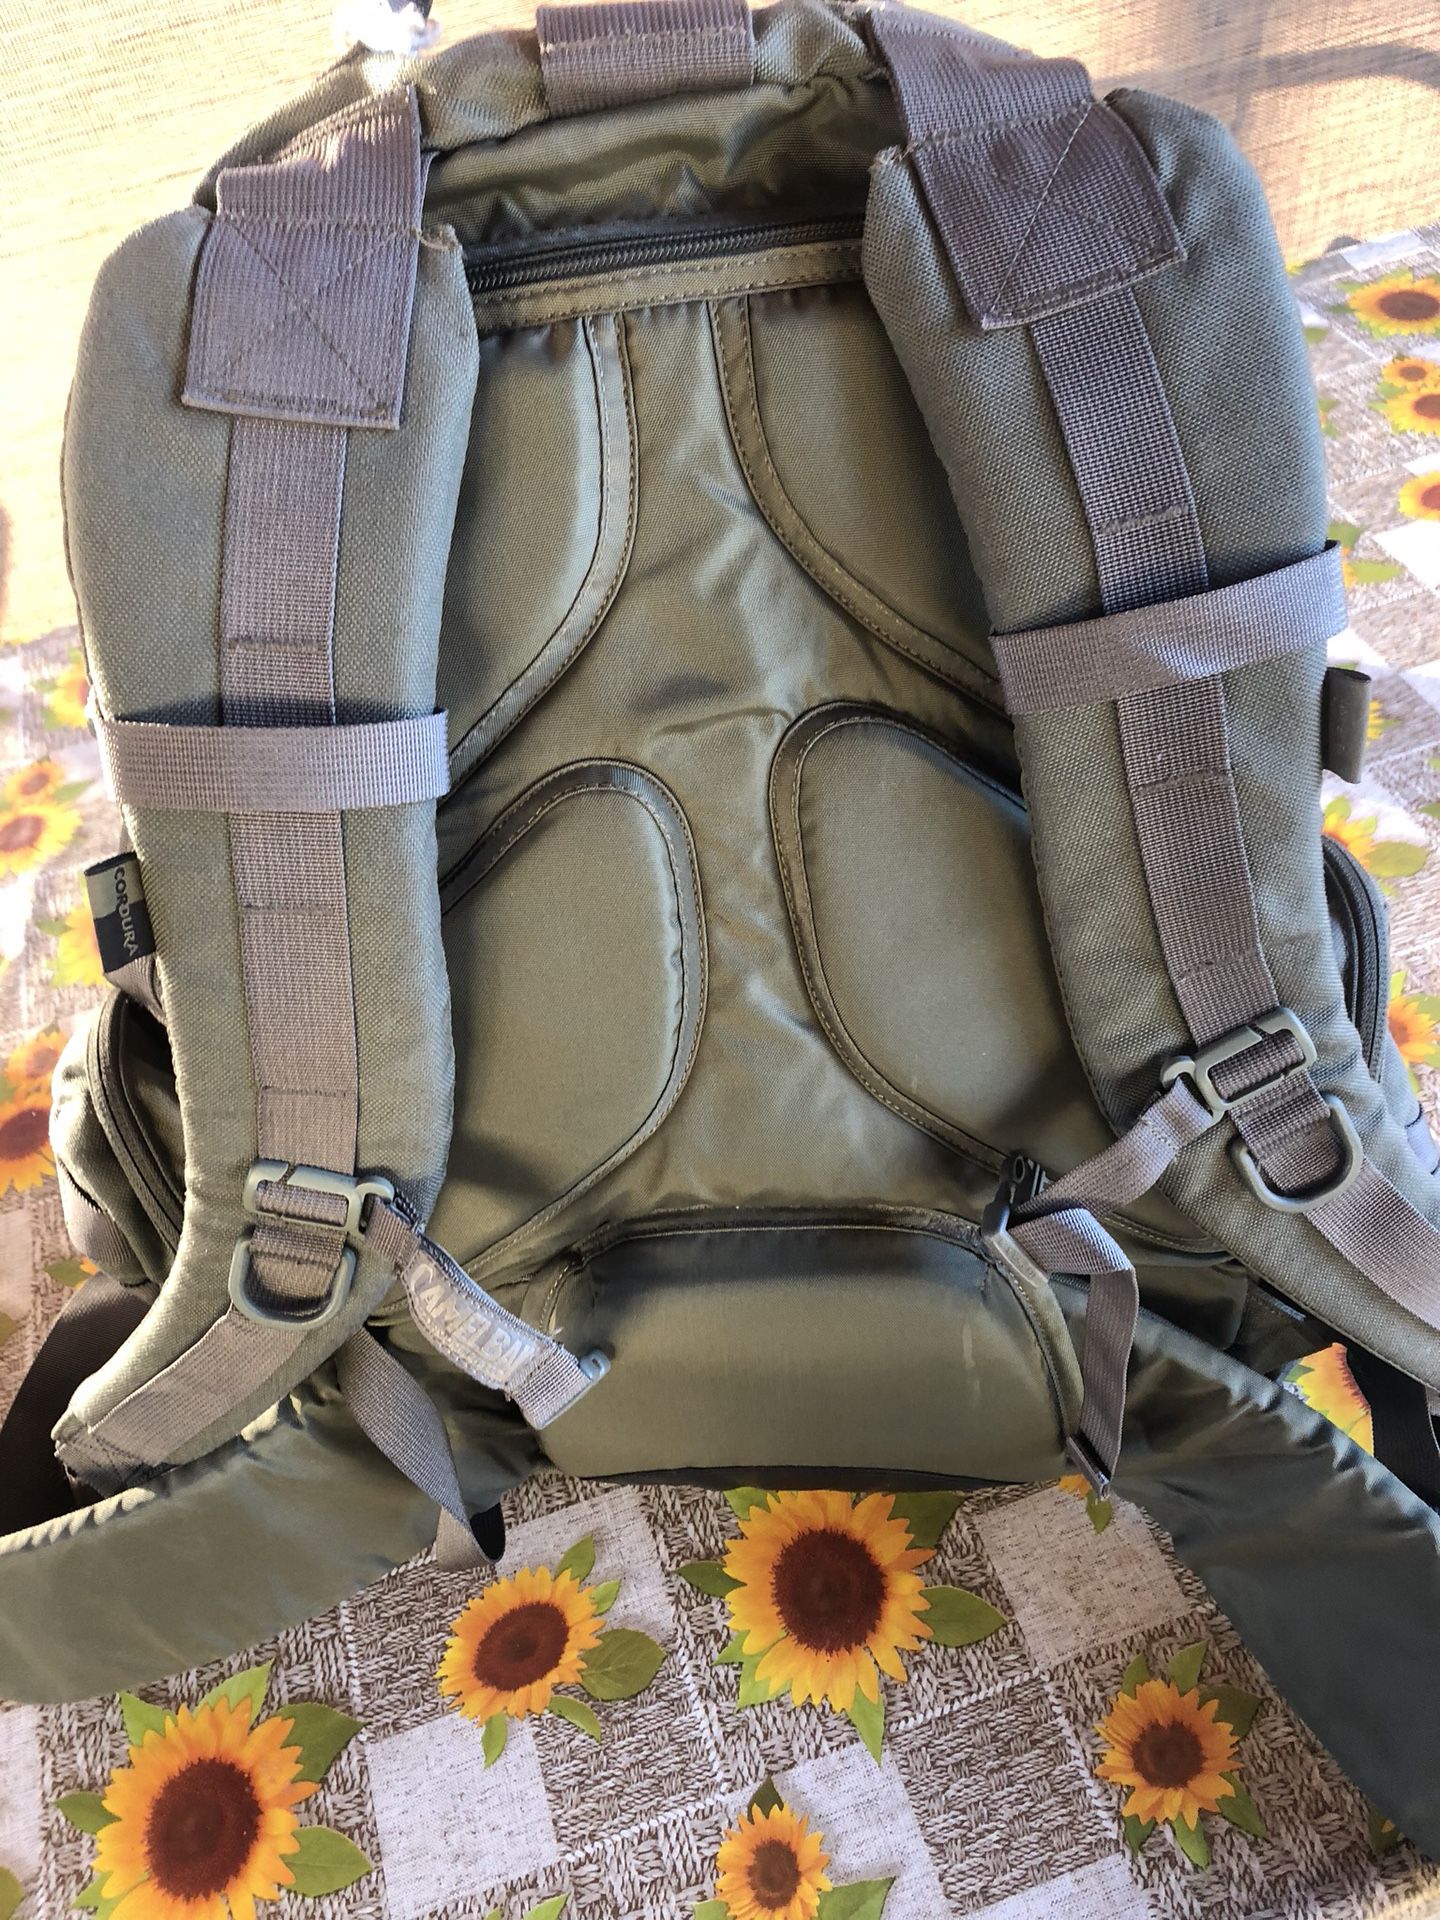 Camelbak full size military backpack!